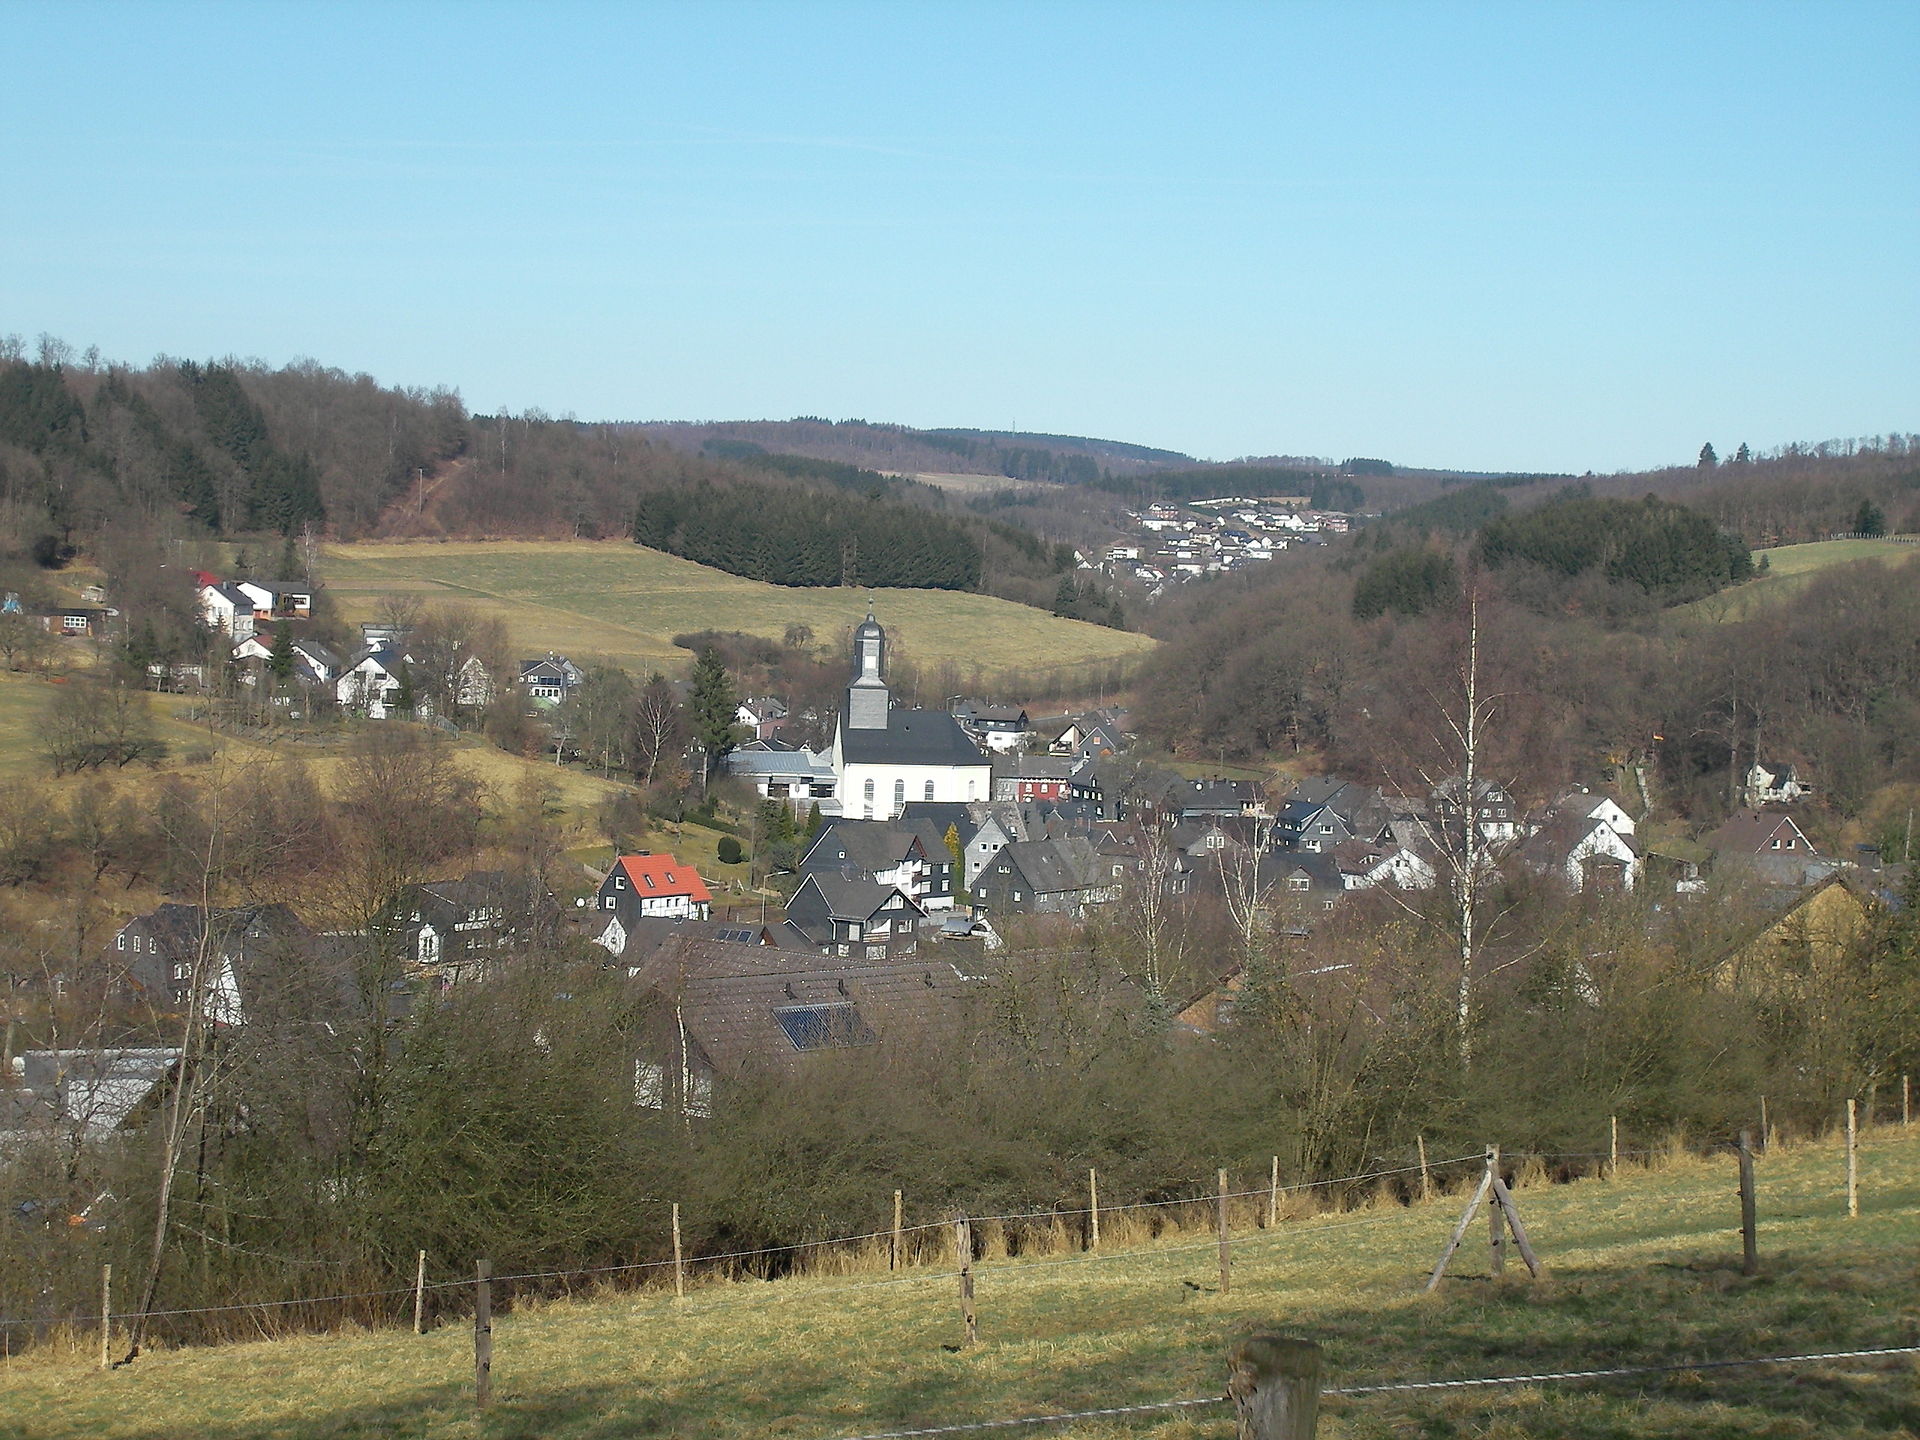 Plittershagen einer der ältesten Ortsteile Freudenbergs. Schon im 11. Jahrhundert wurde der Ort erstmals urkundlich erwähnt. (Bild aus GPS Wanderatlas)